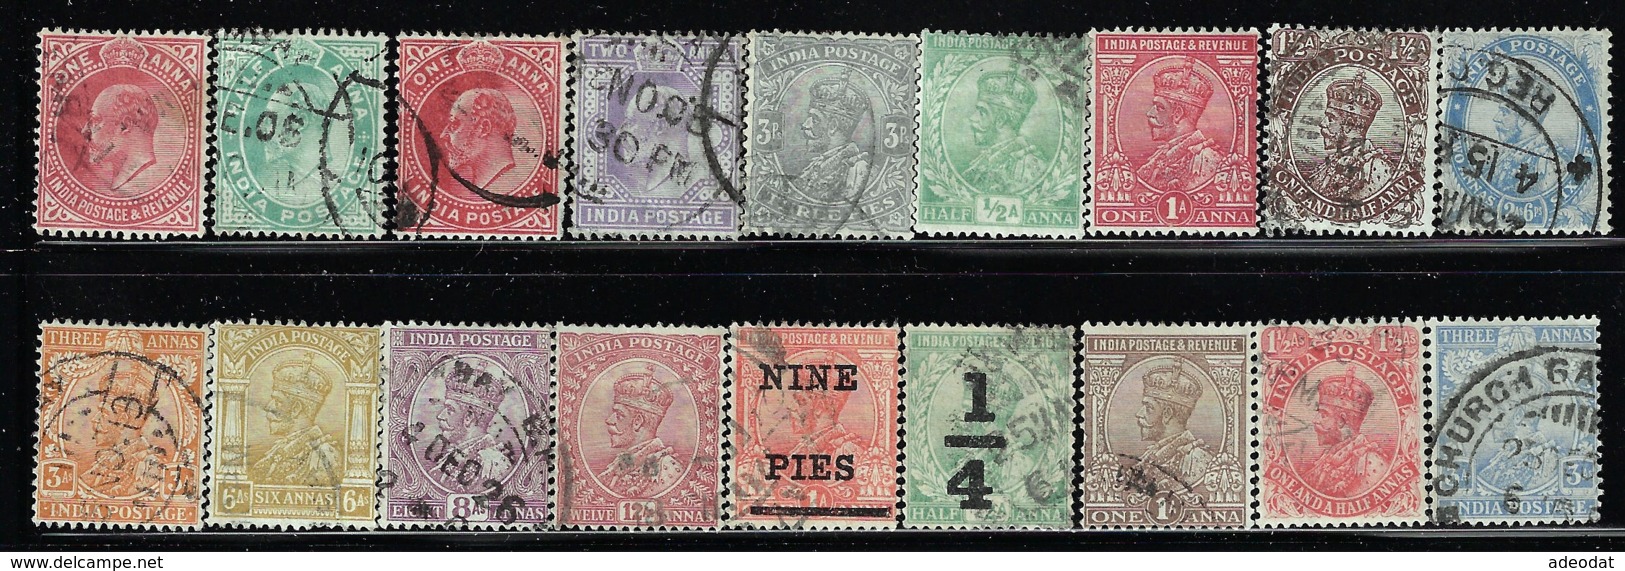 INDIA 1902-1906 SCOTT 61-63,79,89,102,104 CANCELLED CATALOG VALUE US $9.75 - Colecciones & Series